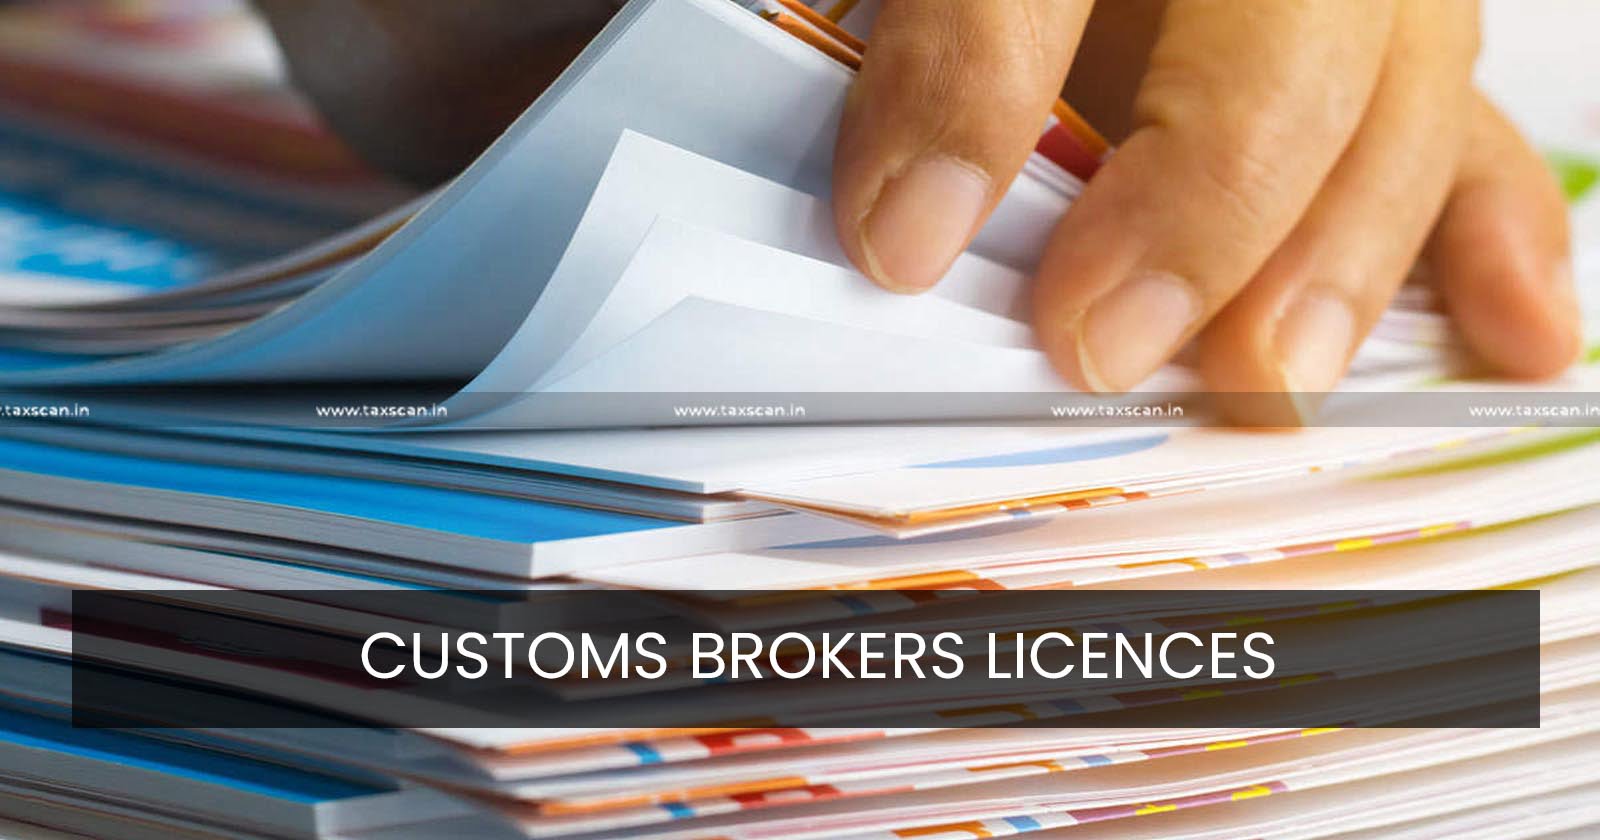 CESTAT - CESTAT Chennai - Customs Broker Licence - Revocation of Customs Broker Licence - TAXSCAN